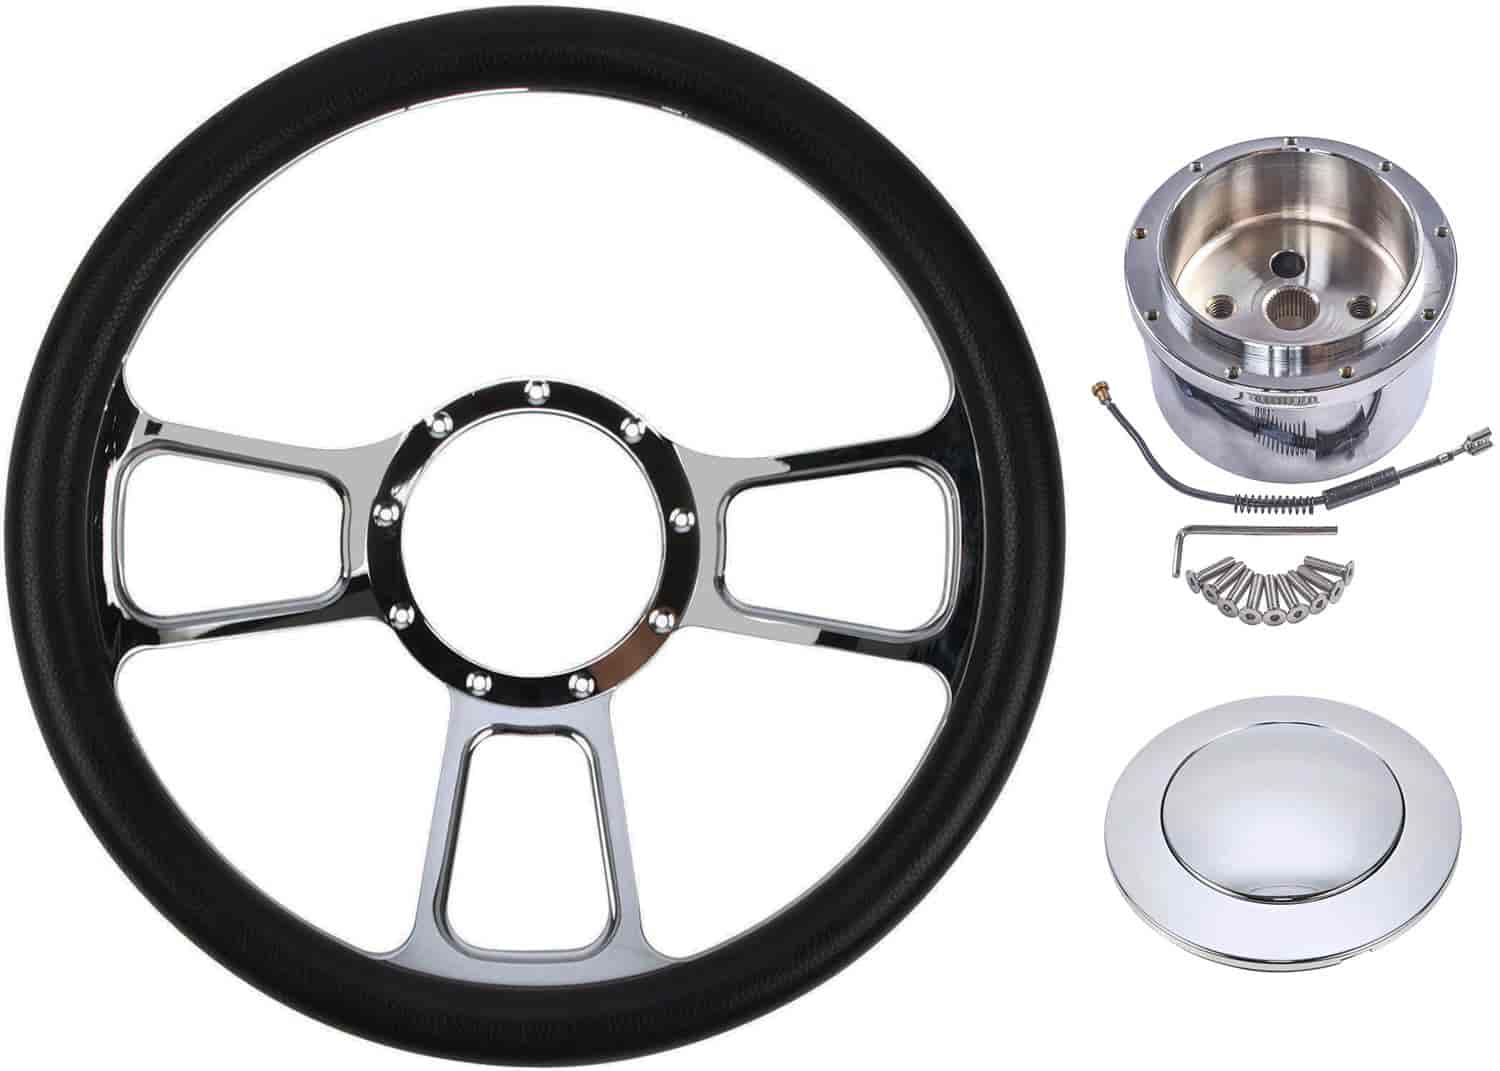 Chrome-Plated Billet Aluminum 14 in. Steering Wheel Kit [Lunar Spoke Design]